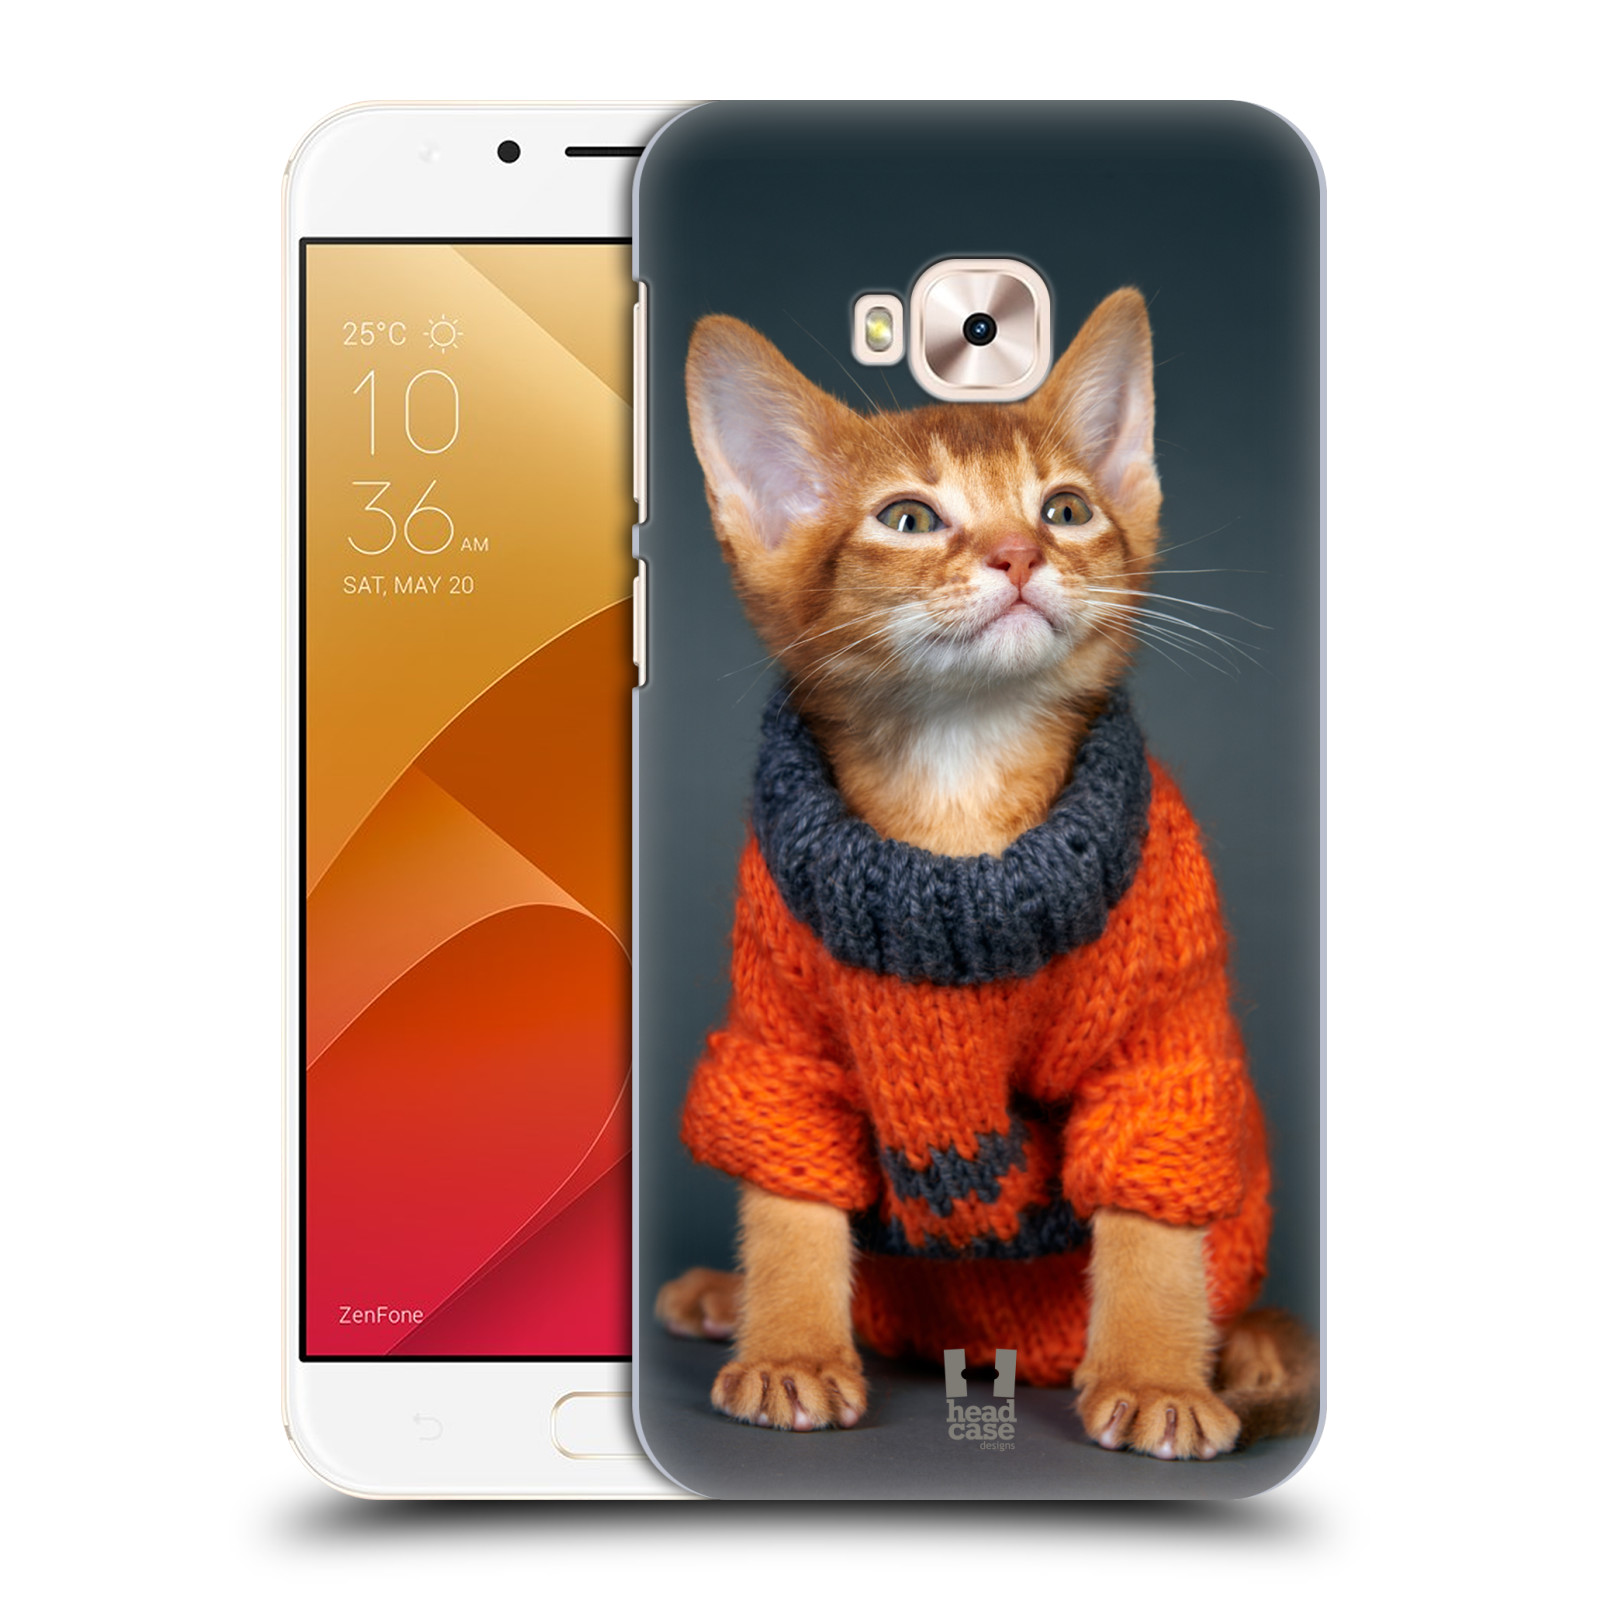 HEAD CASE plastový obal na mobil Asus Zenfone 4 Selfie Pro ZD552KL vzor Legrační zvířátka kočička v oranžovém svetru